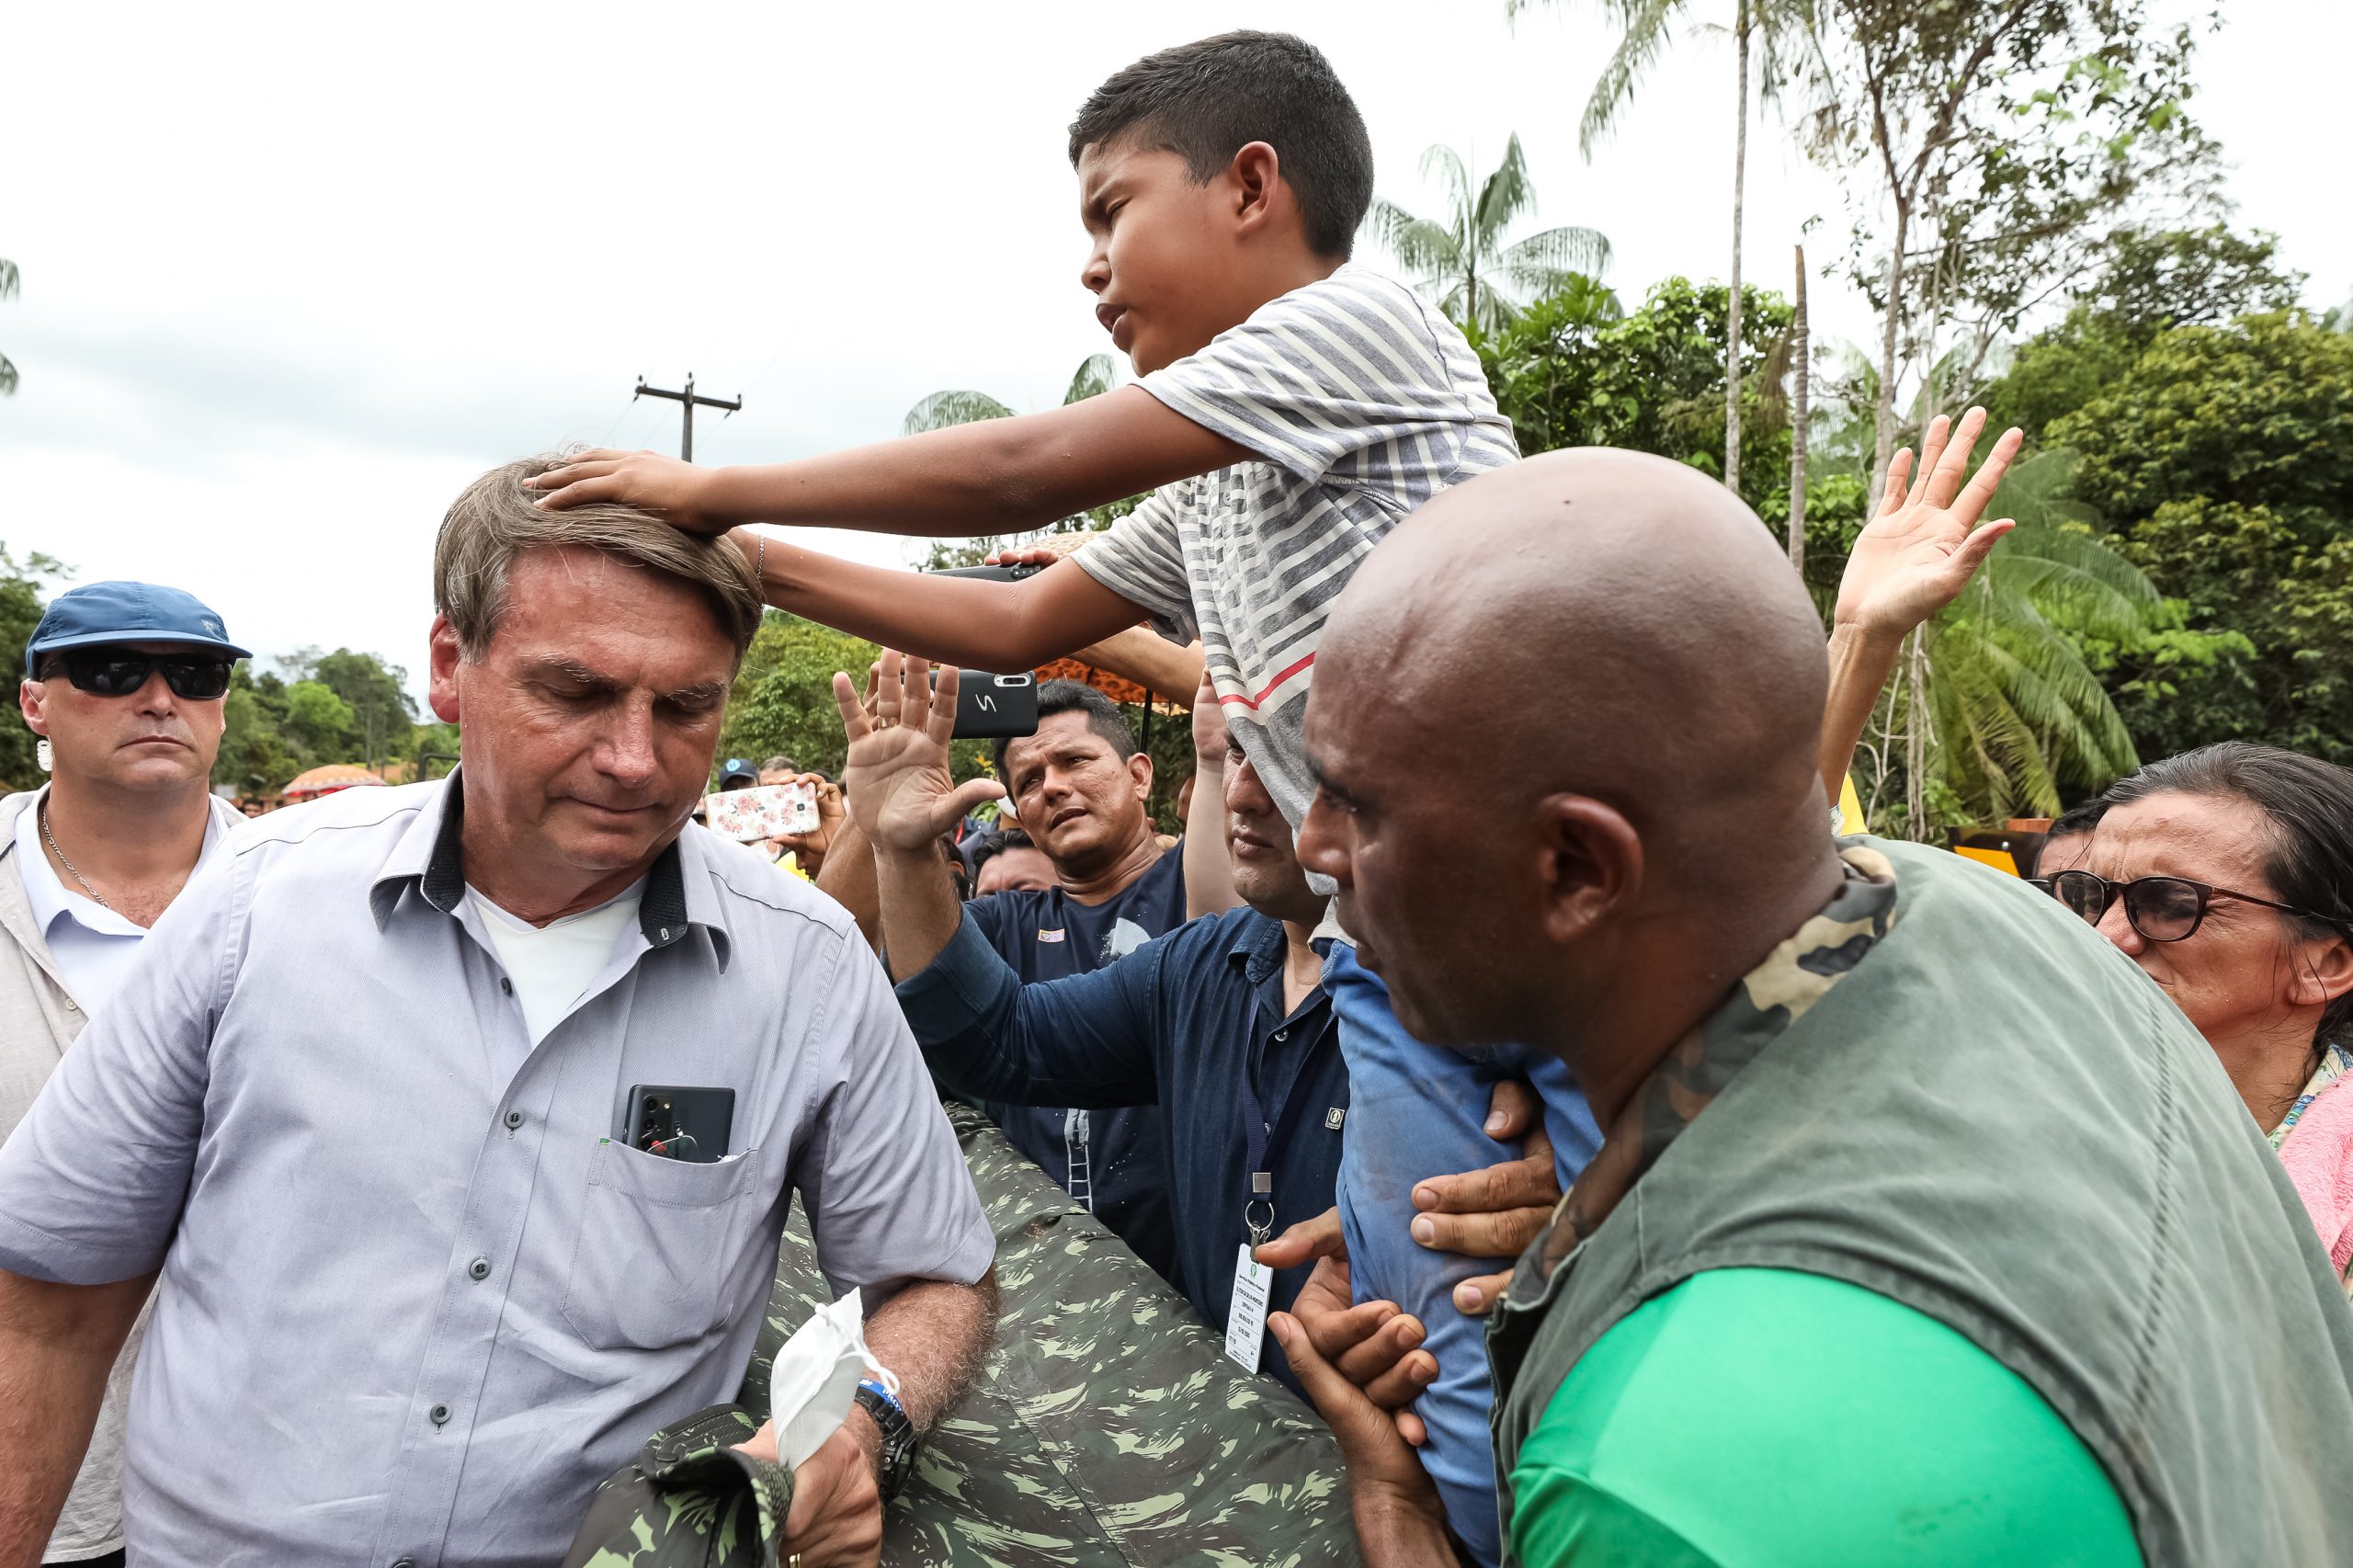 Sob clima de festa, indígenas recebem Bolsonaro com euforia e muitas fotos 1